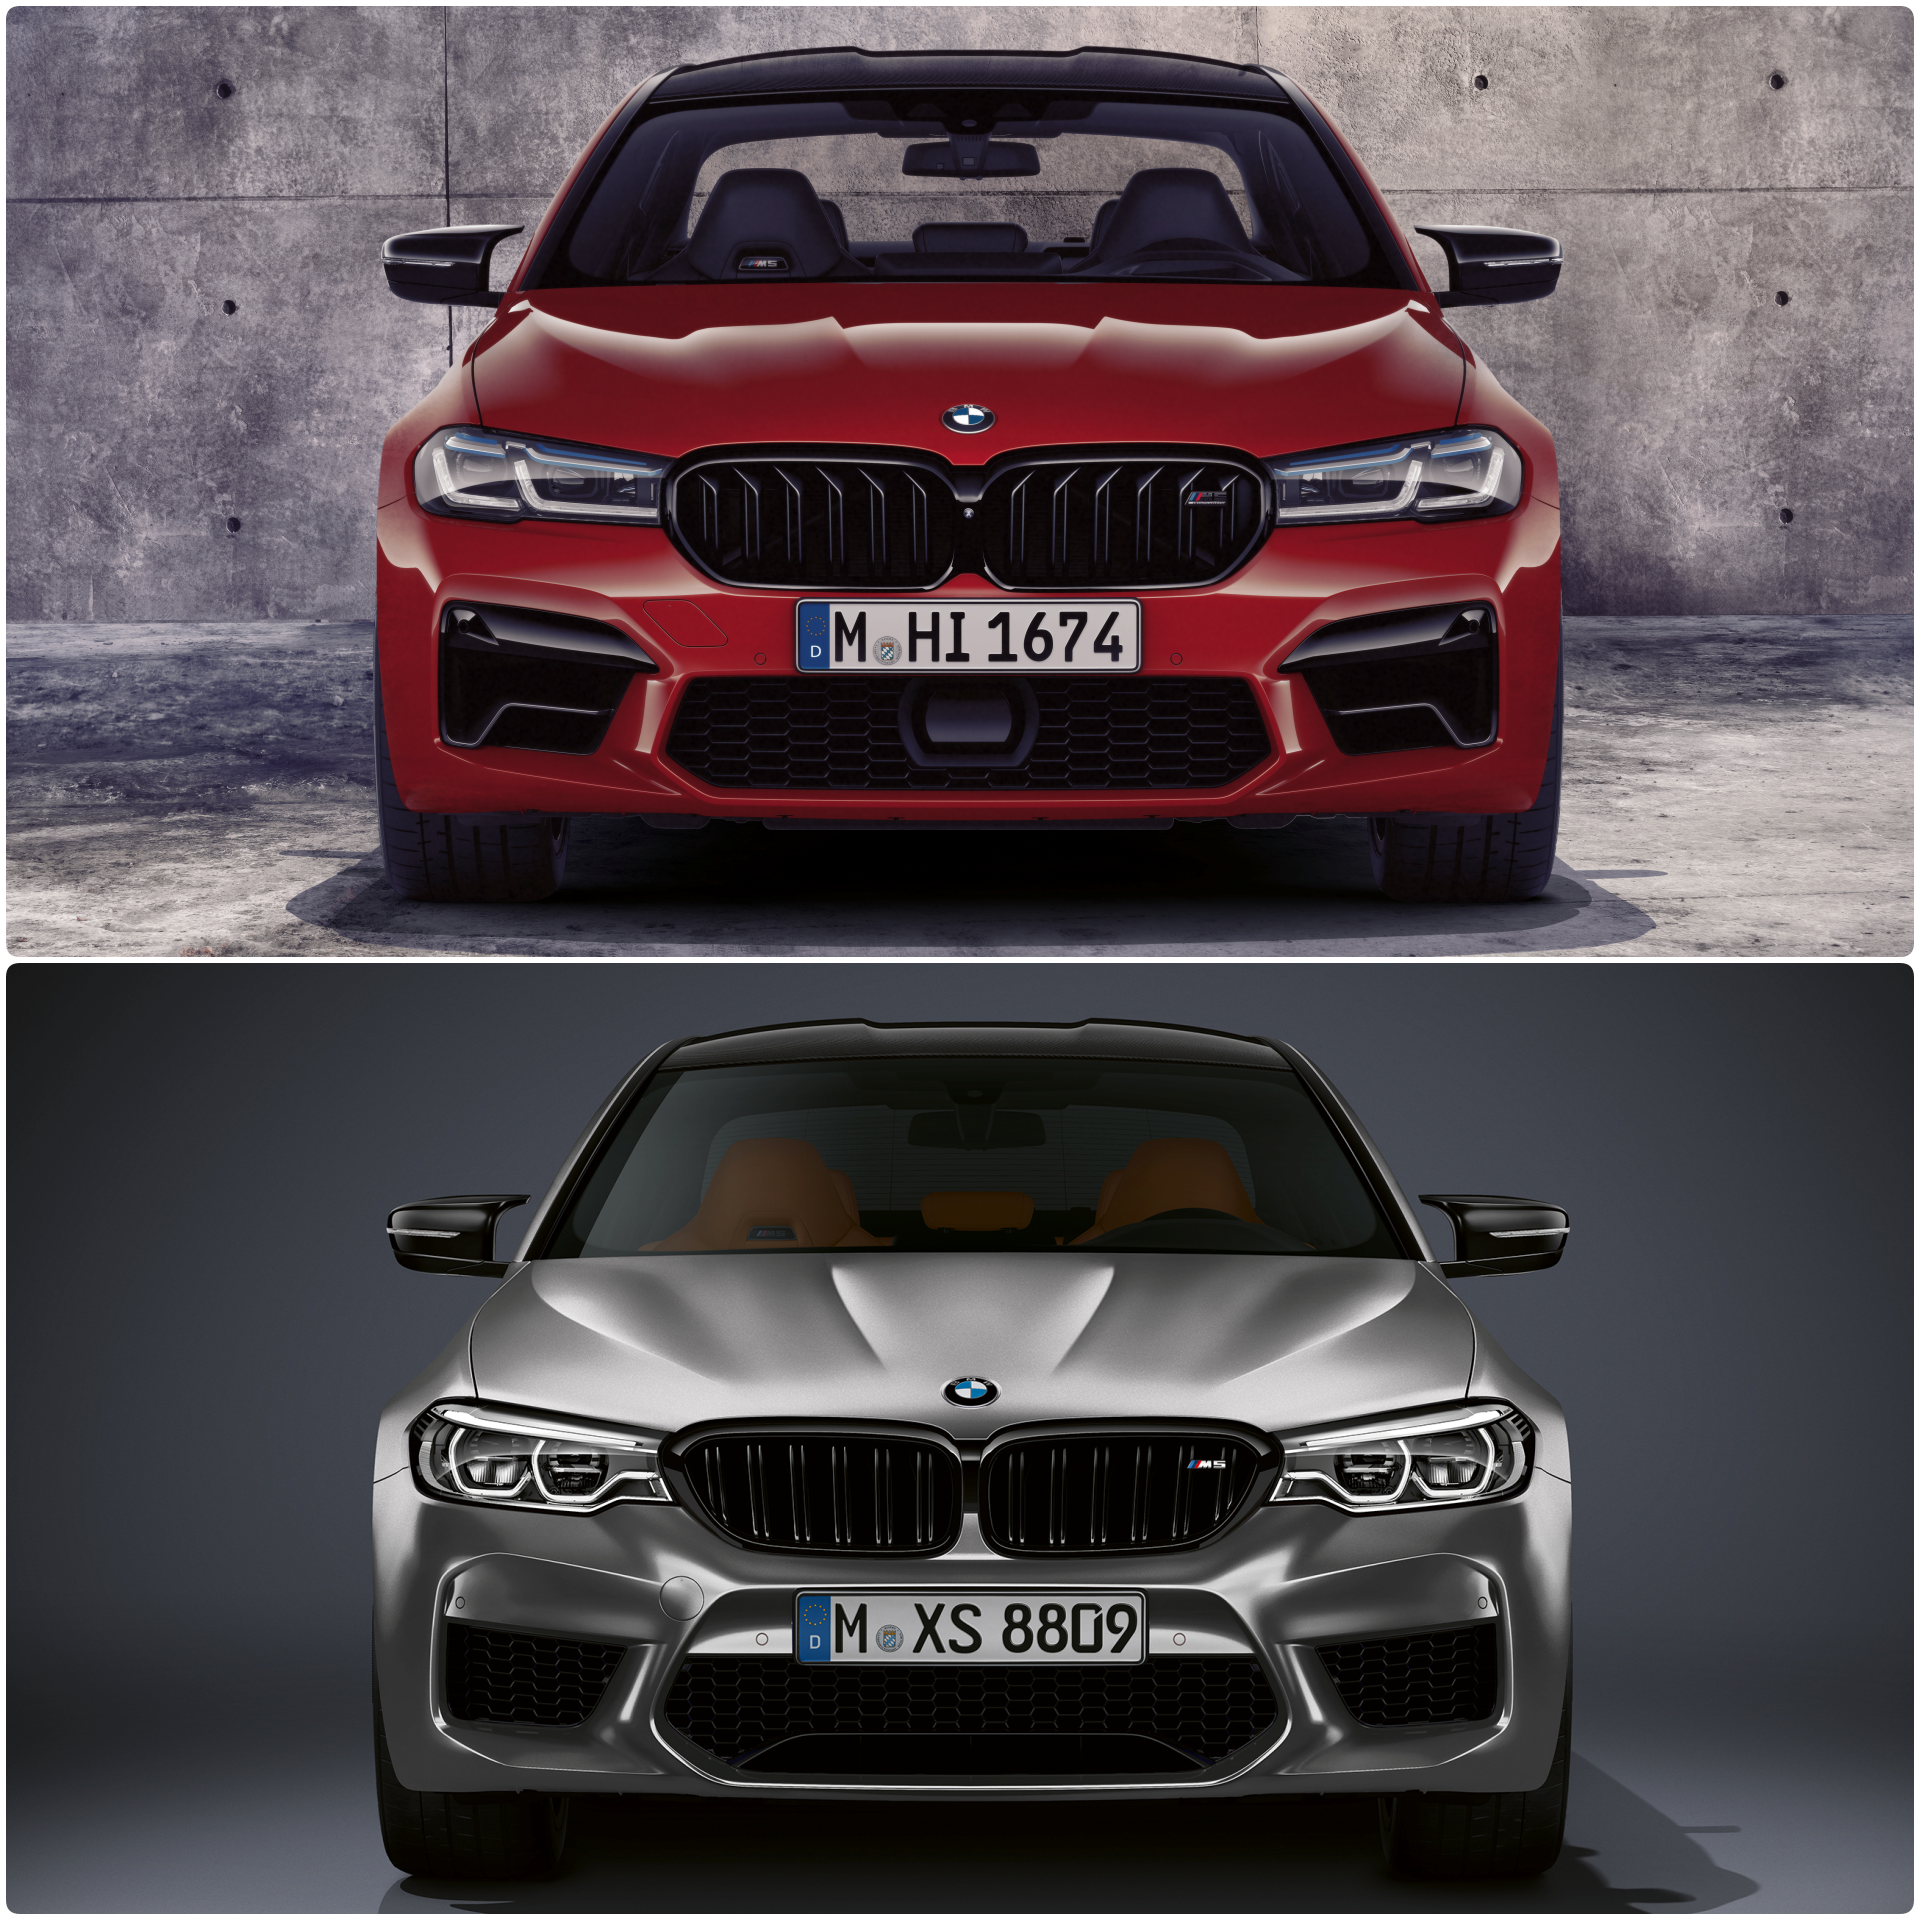 BMW M5 Competition F90 LCI vs. pre LCI F90 3